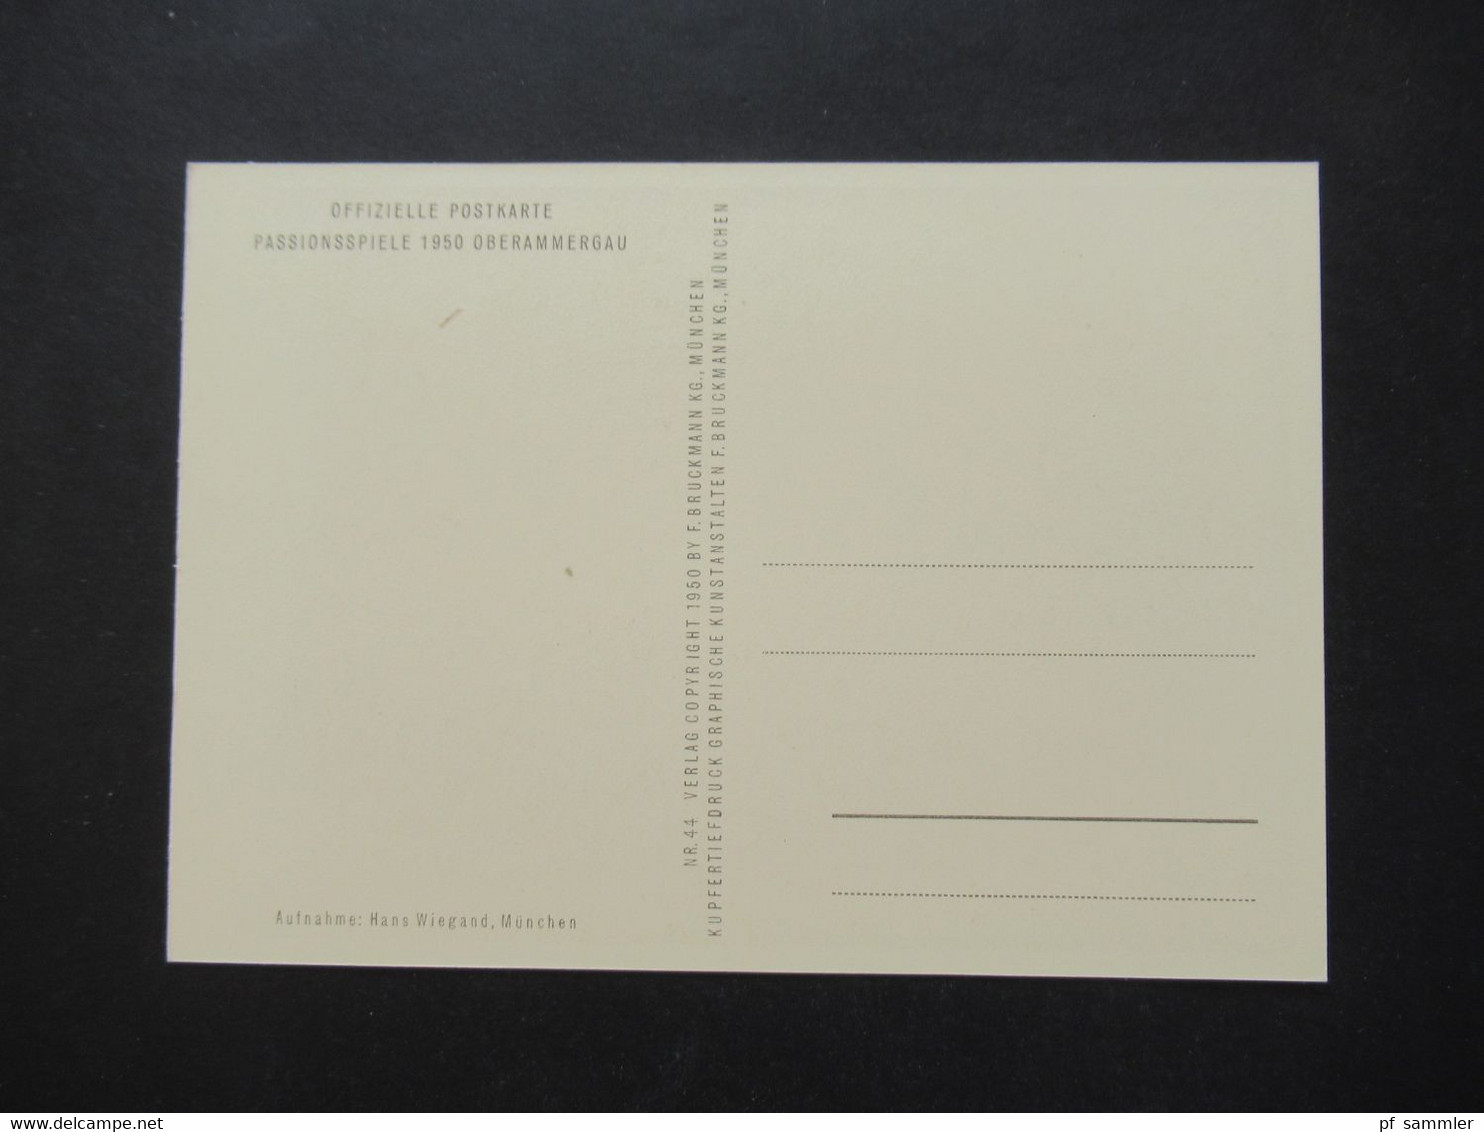 12 offizielle Postkarten Passionsspiele Oberammergau 1950 / offizielle Aufnahmen im original Schuber!